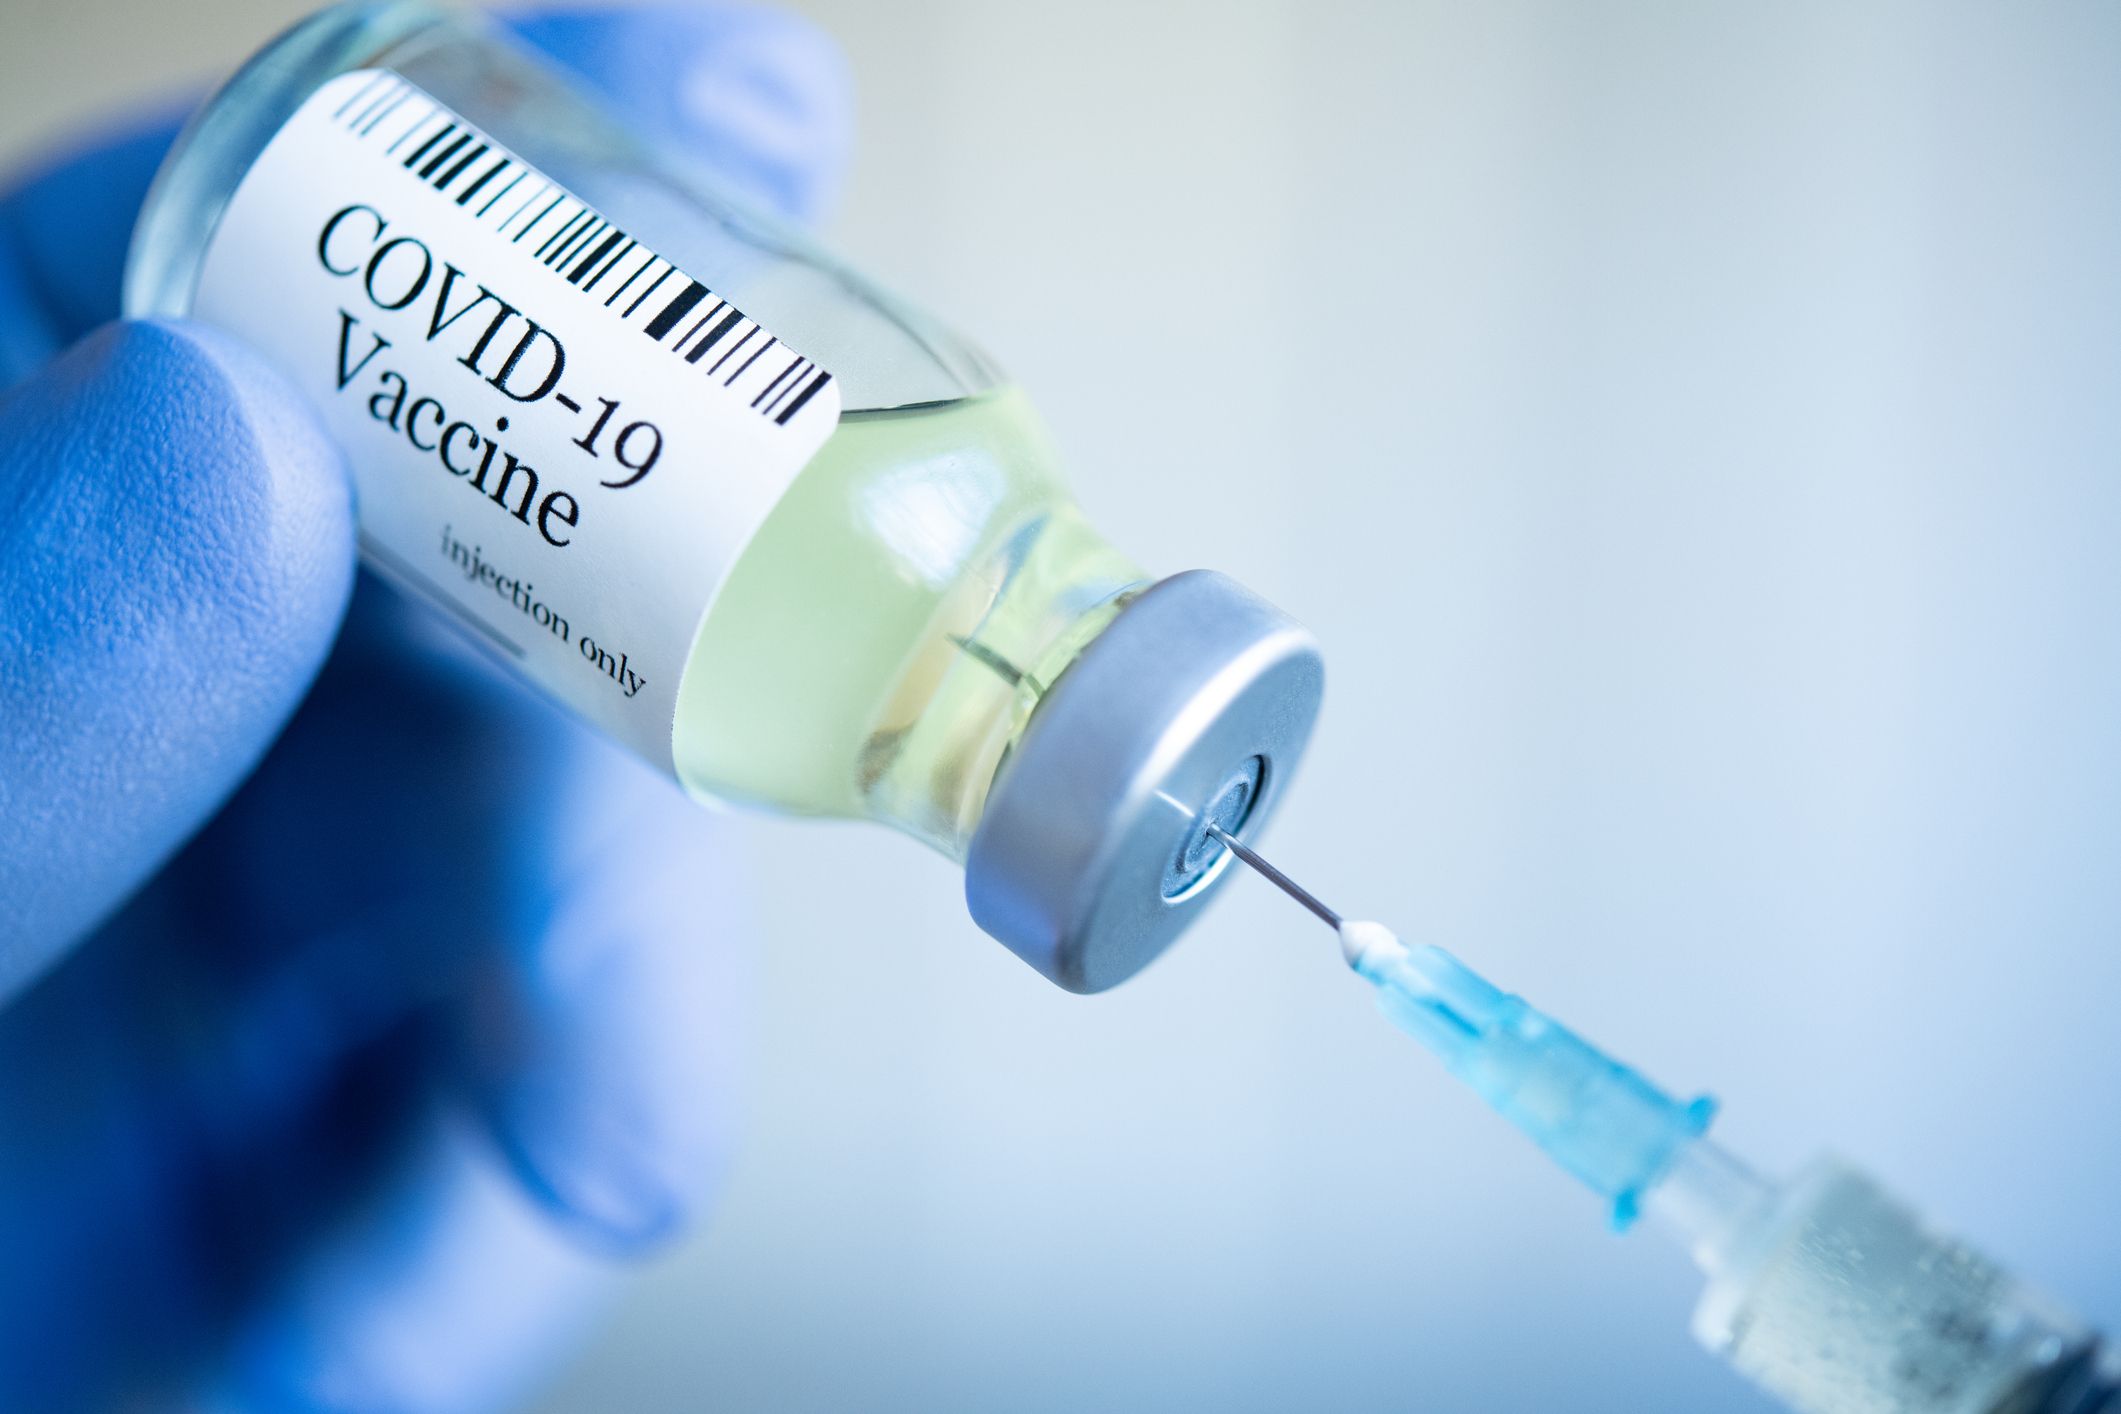 Médicos de la universidad de Oxford advierten de riesgos de trombo al quitarse las muelas del juicio y vacunarse a la vez